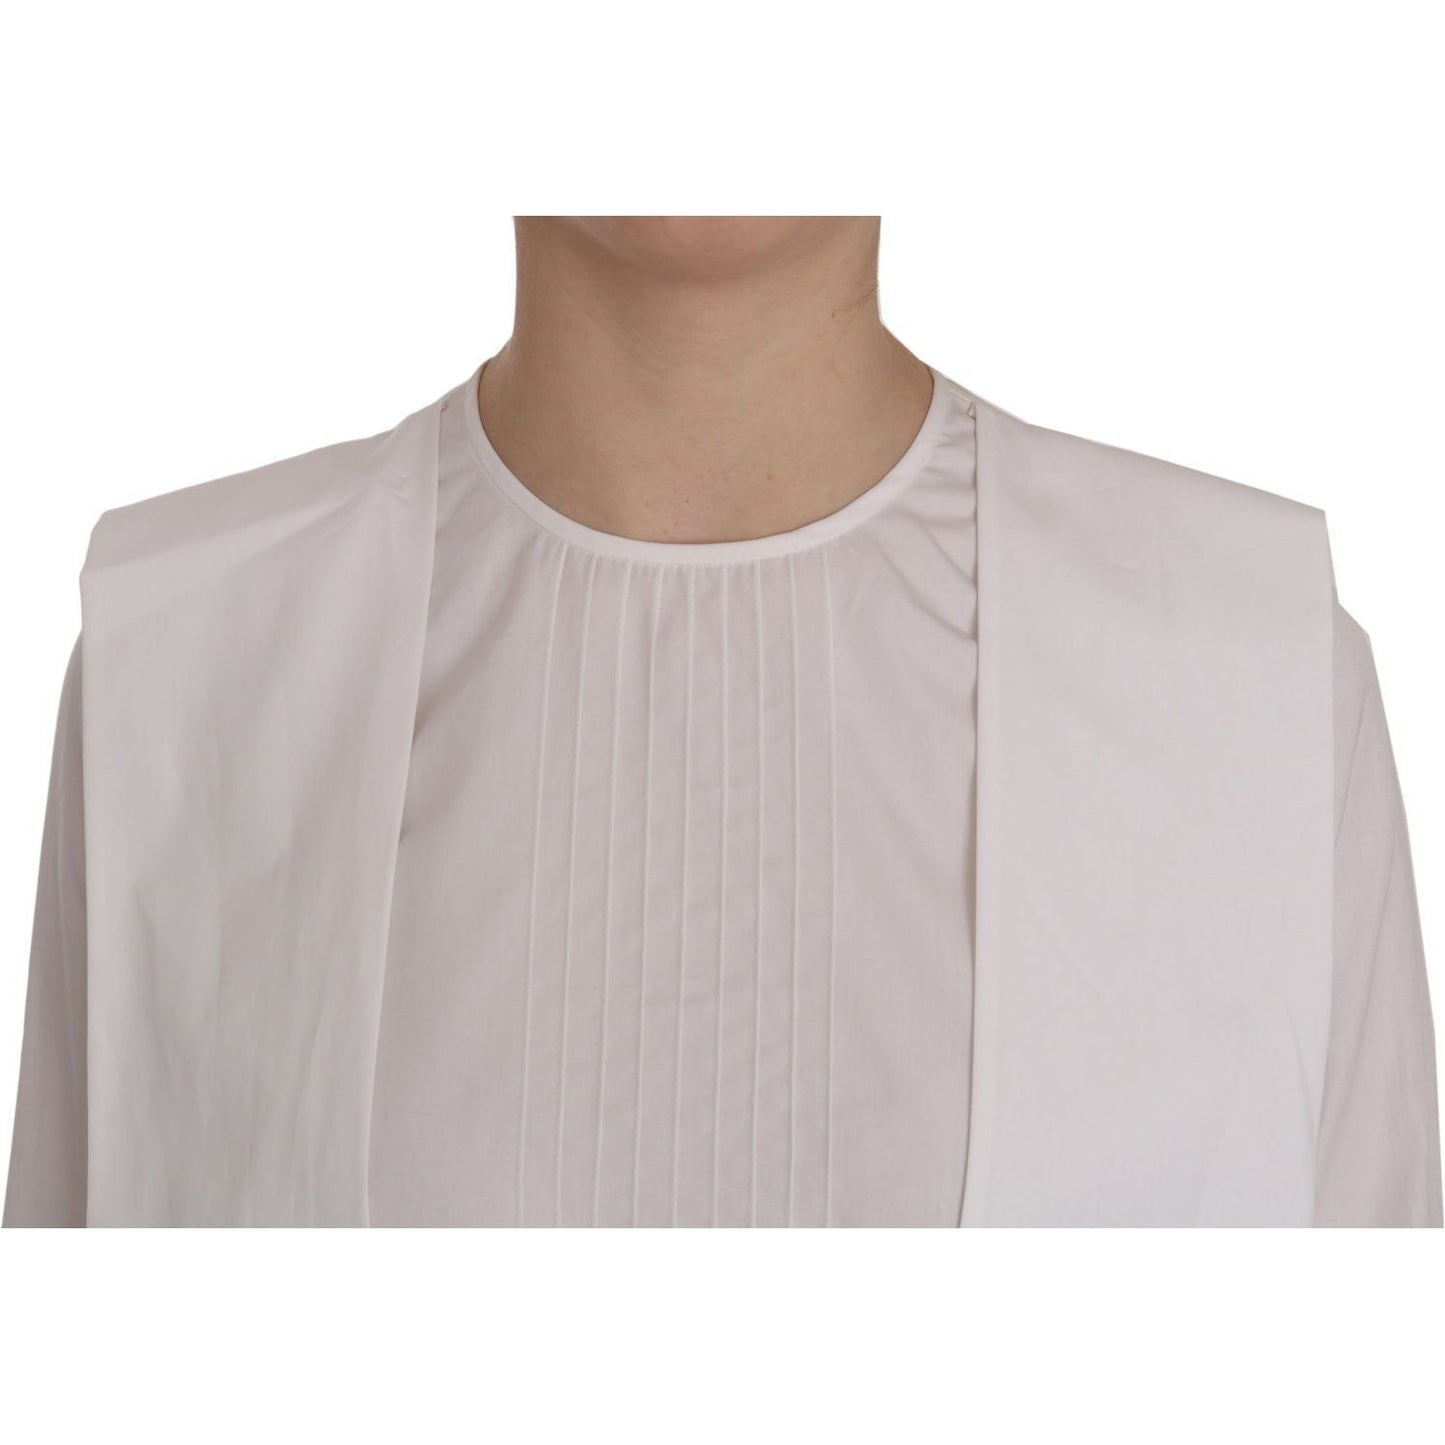 Dsquared² Elegant White Cotton Crew Neck Top white-crew-neck-long-sleeve-cotton-blouse